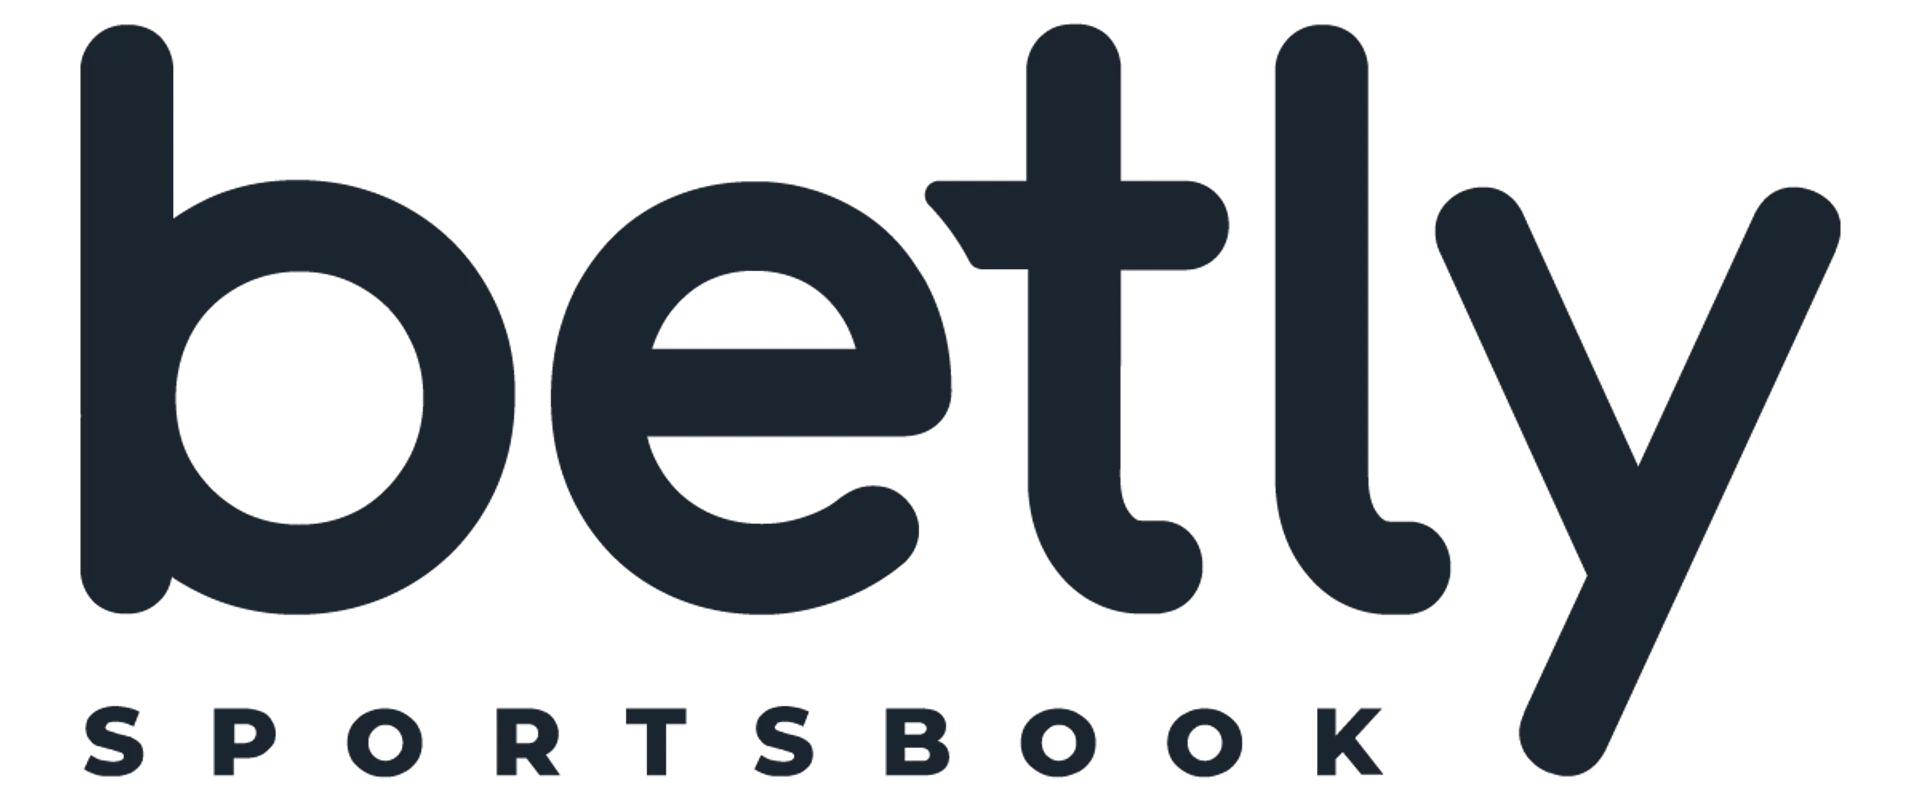 BETLY logo